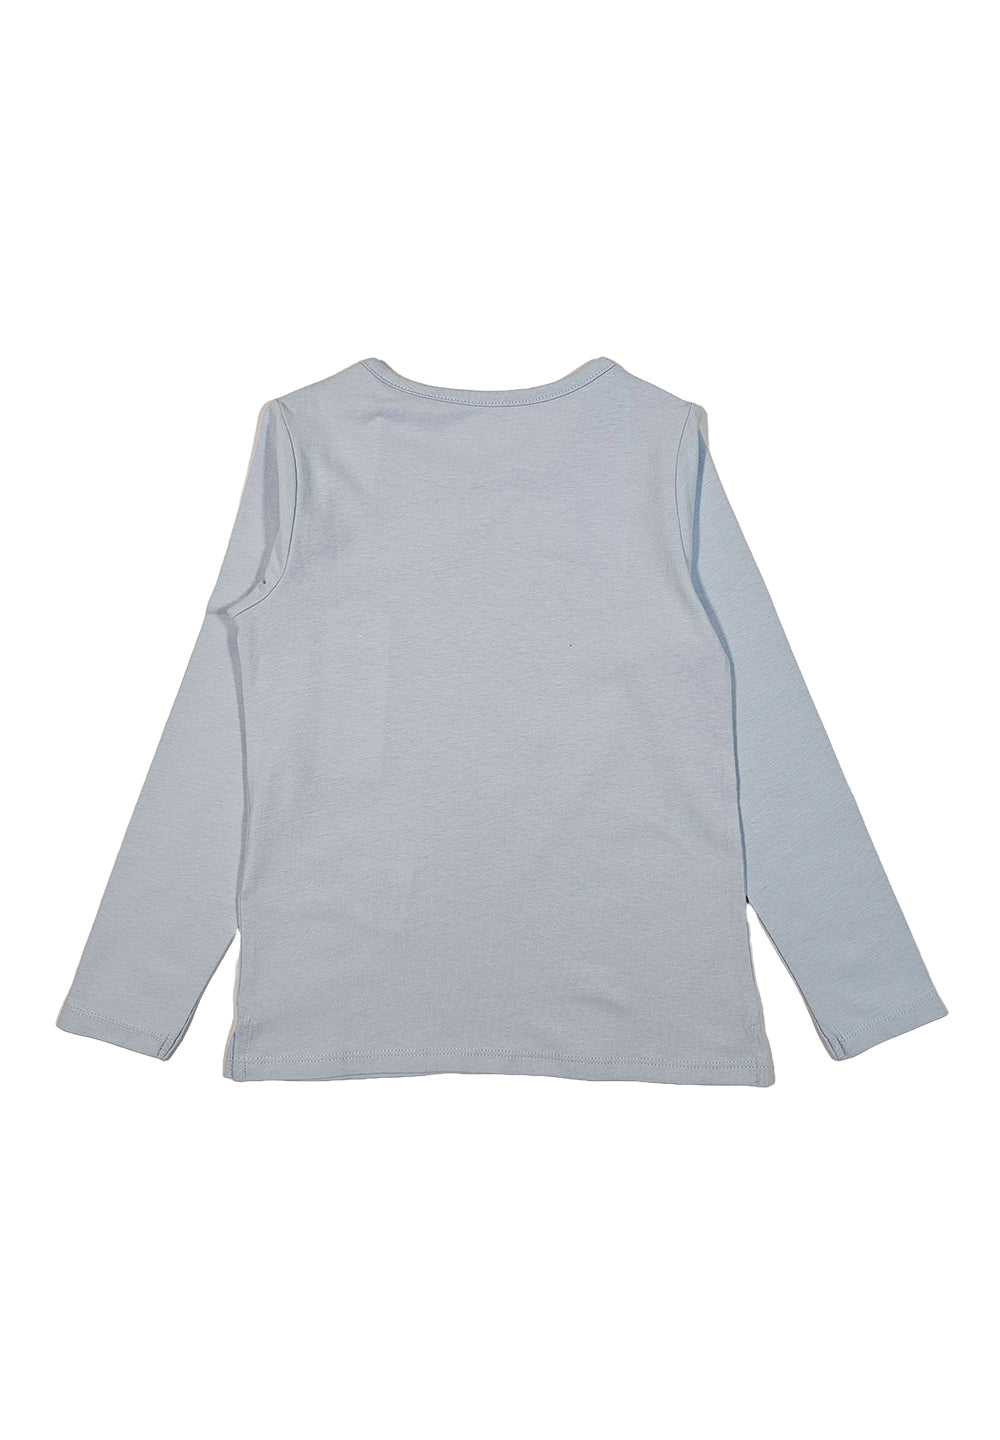 Light blue t-shirt for girls